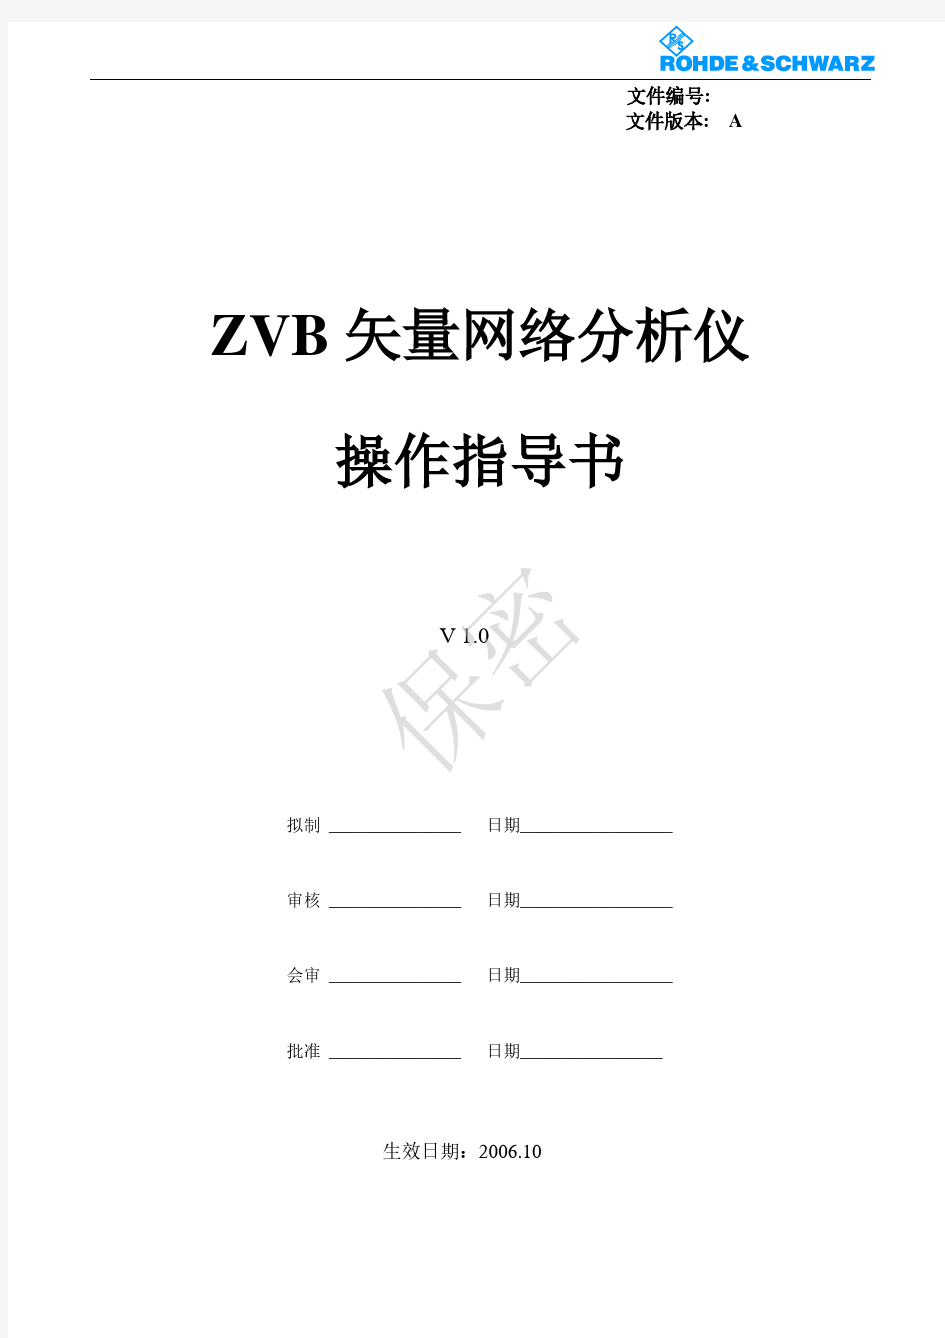 ZVB8网络分析仪的使用操作手册-中文版本